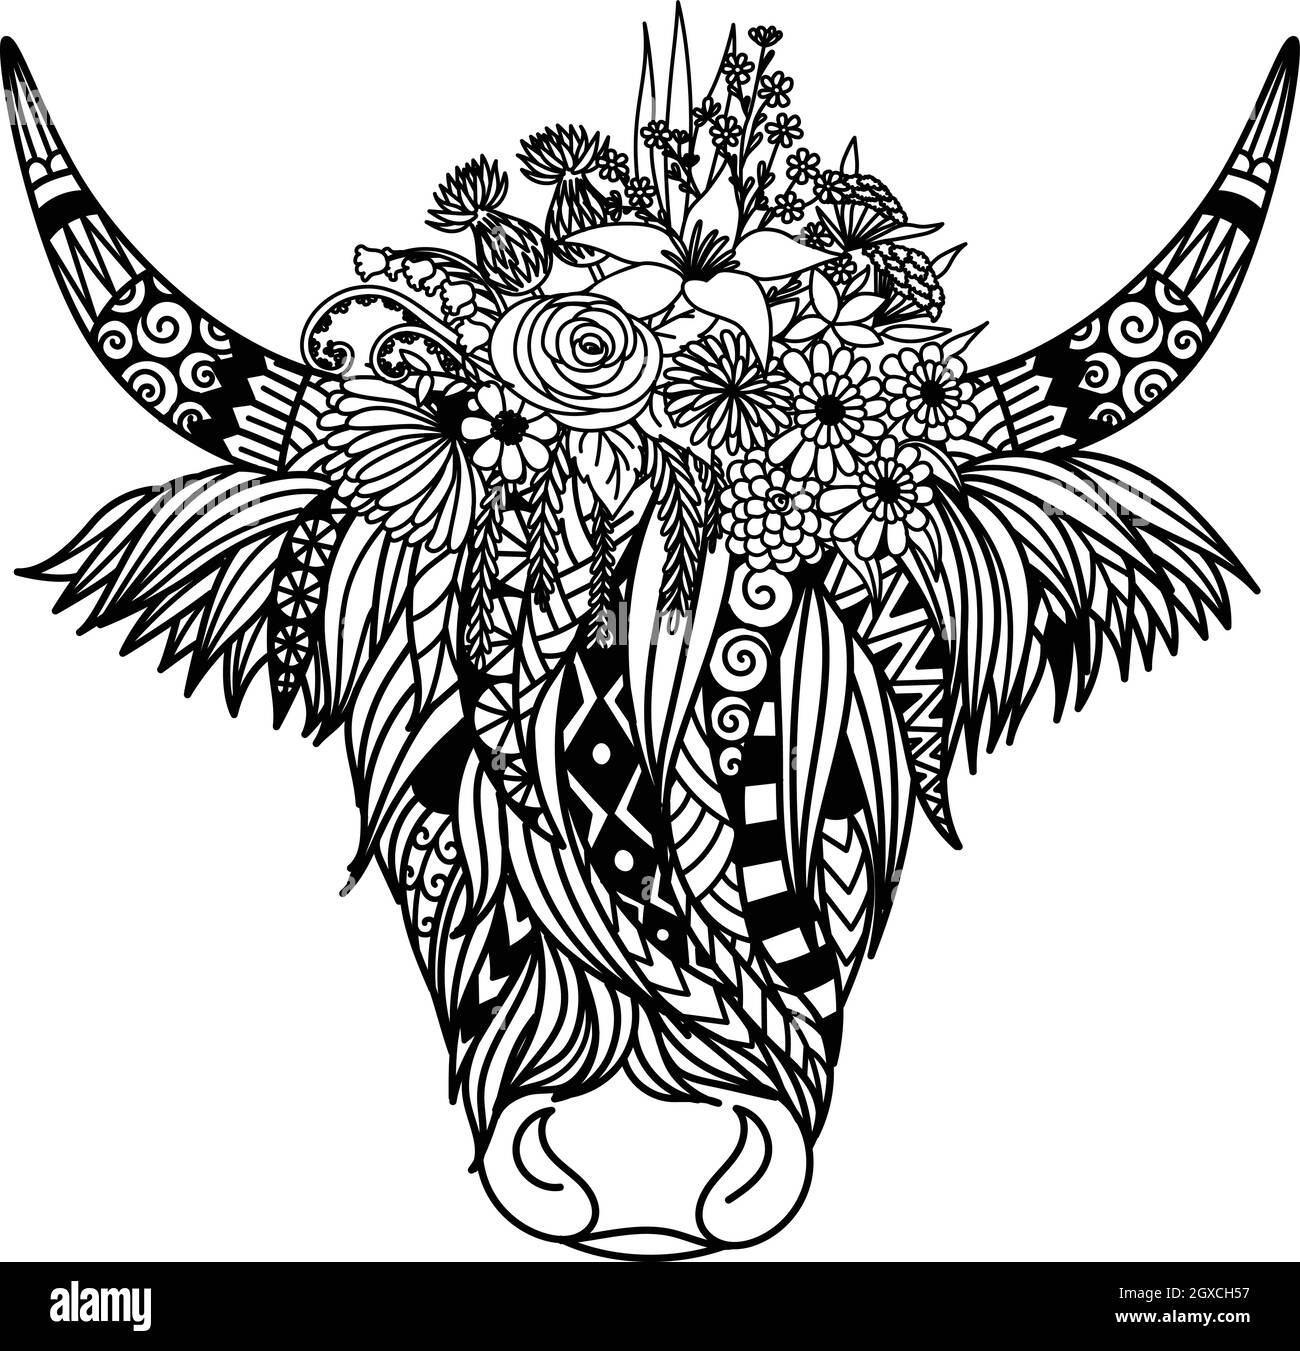 Mucca delle Highland con disegno dei fiori per libro da colorare, pagina da colorare, disegno della t shirt e così via. Illustrazione vettoriale Illustrazione Vettoriale